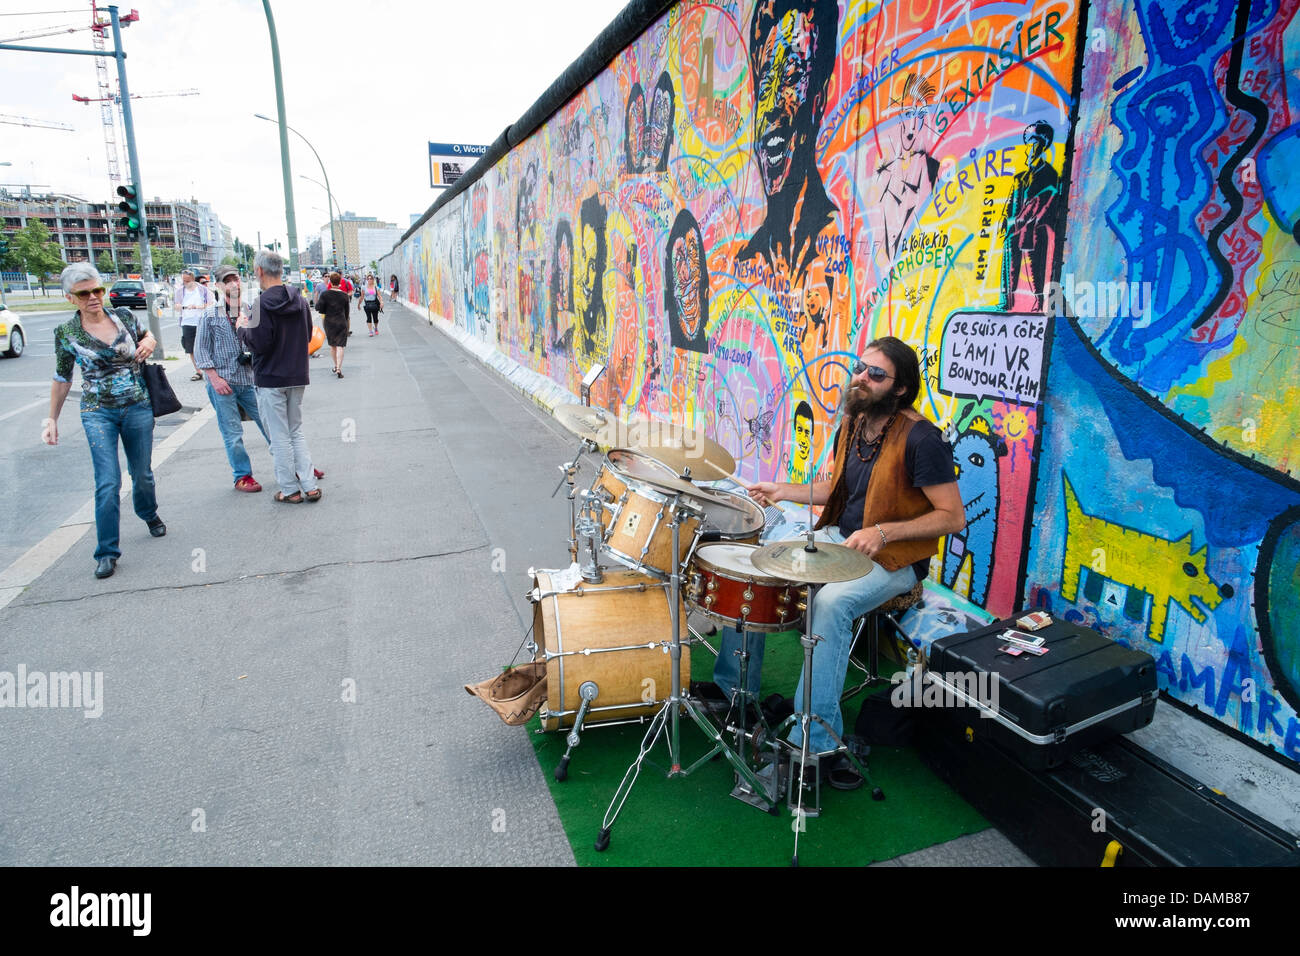 Musicien de la rue sur rue à côté mur de Berlin à l'East Side Gallery à Berlin Allemagne Banque D'Images